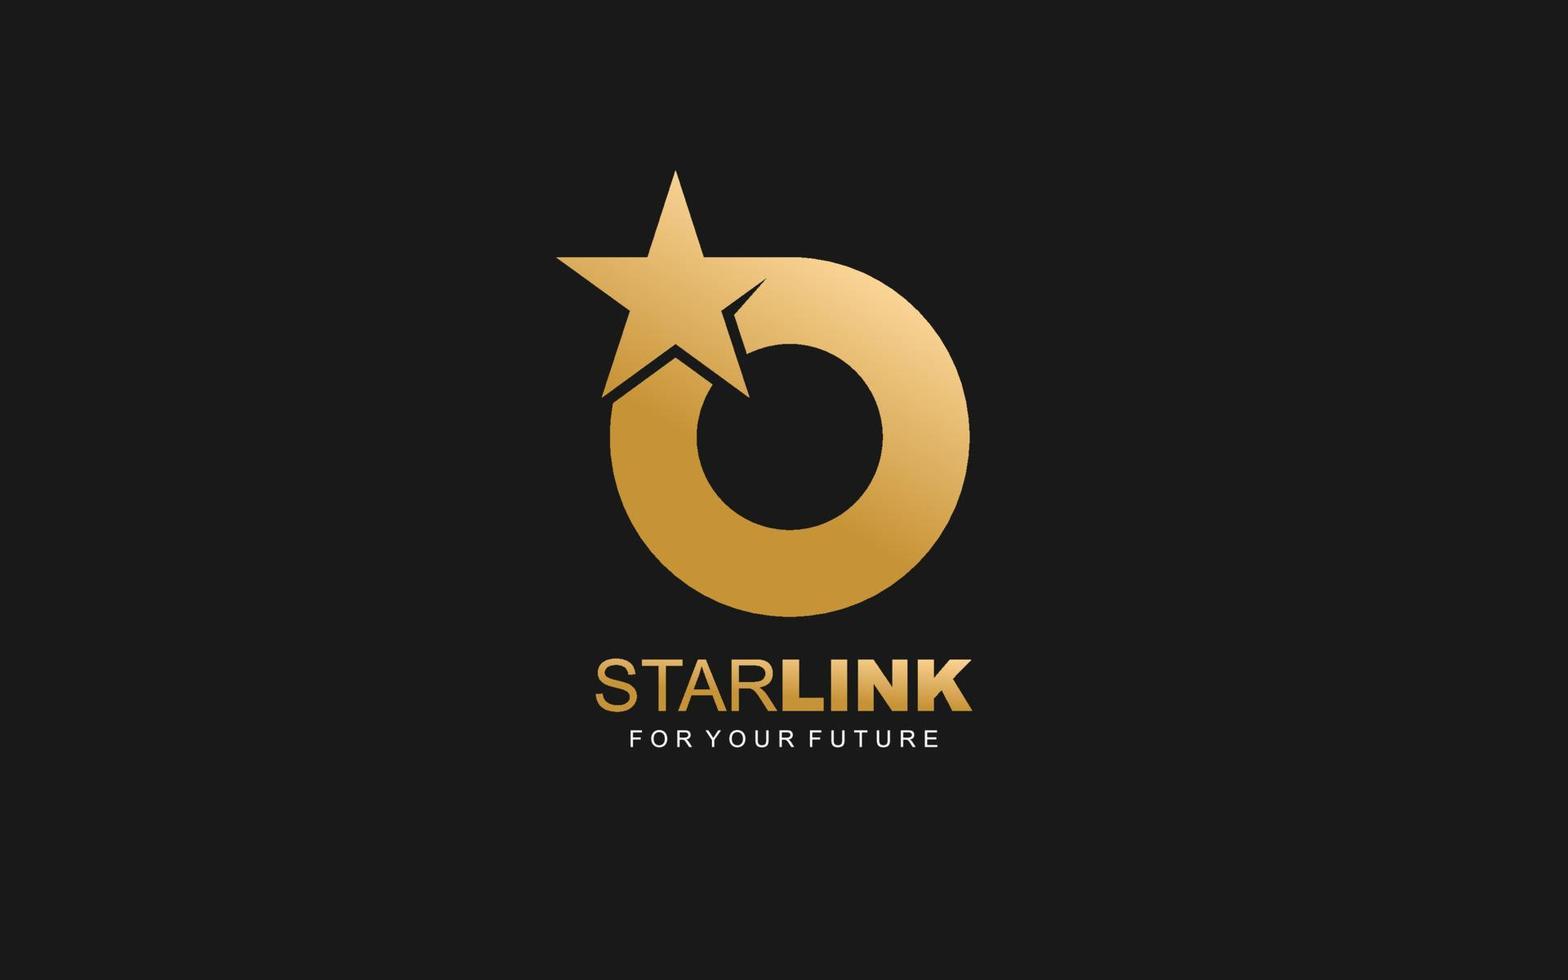 O logo ster voor branding bedrijf. brief sjabloon vector illustratie voor uw merk.